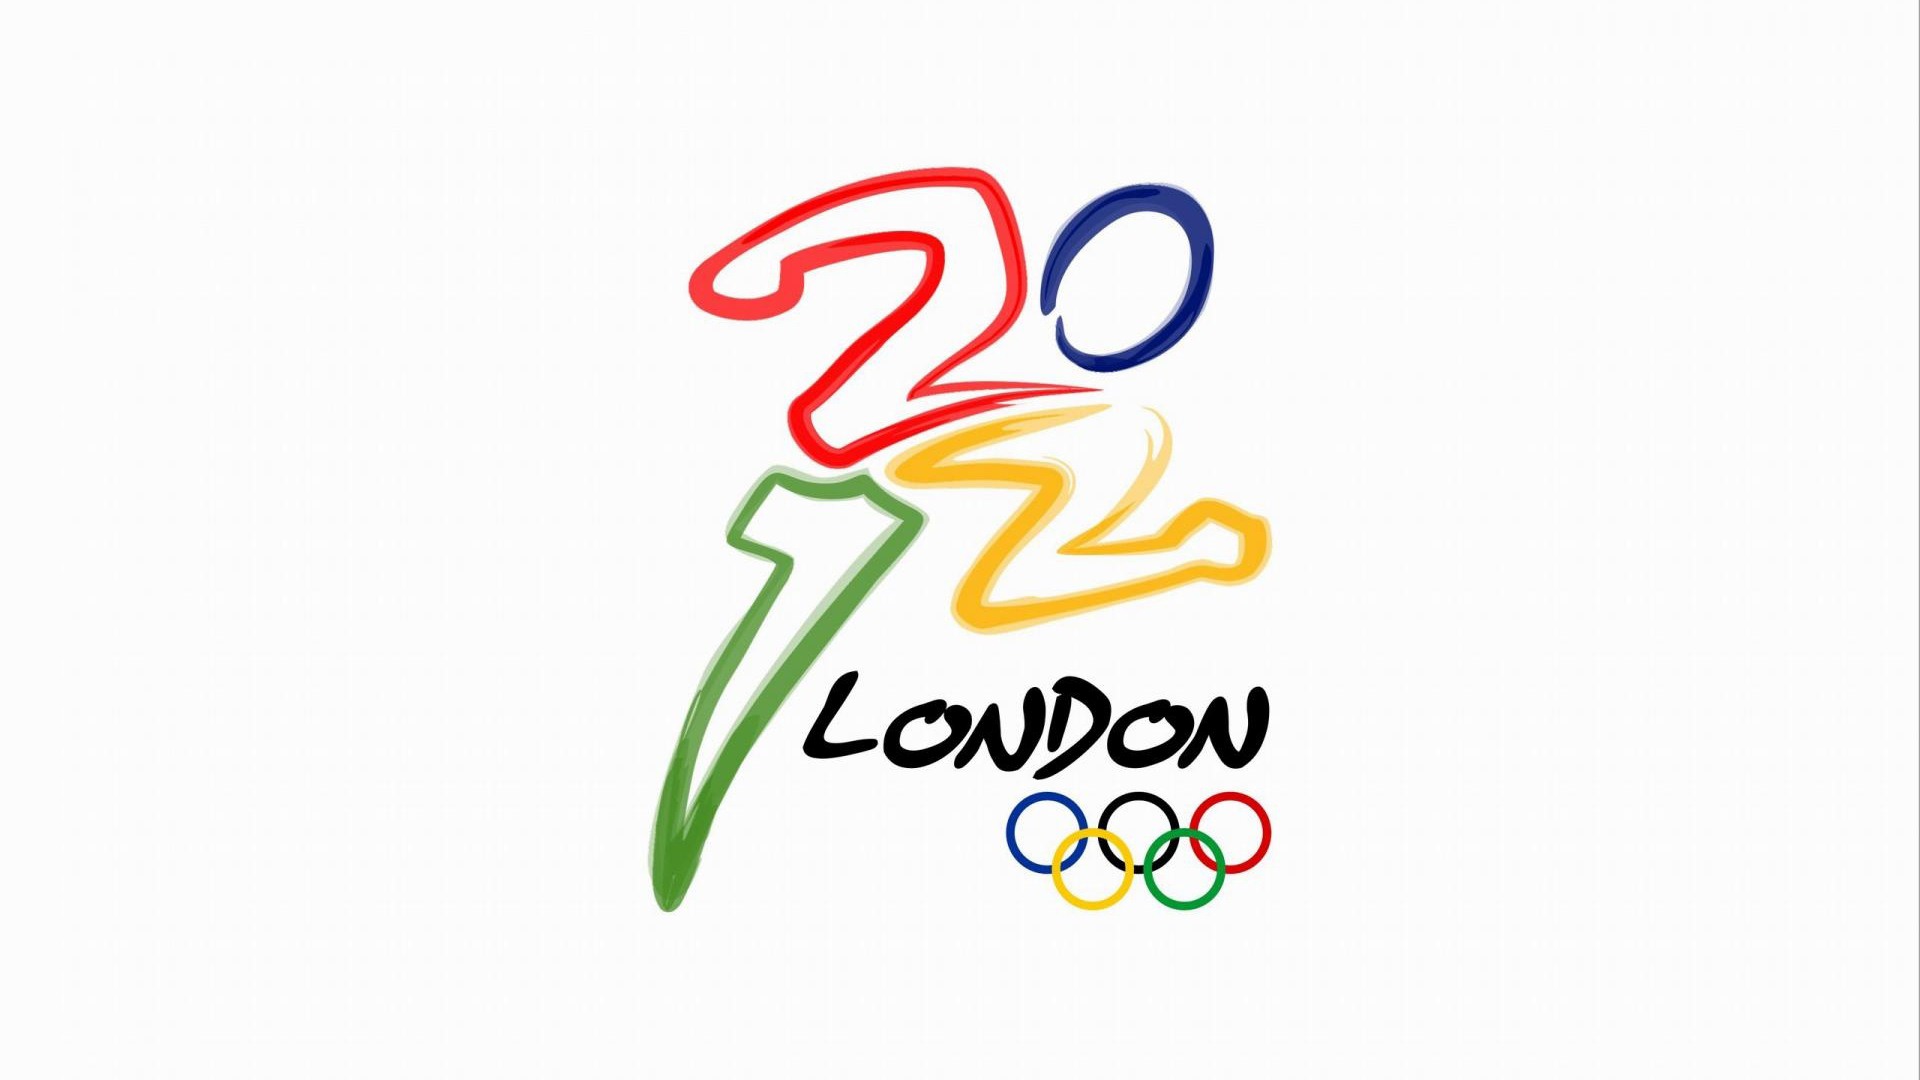 2012伦敦奥运会 主题壁纸(二)22 - 1920x1080